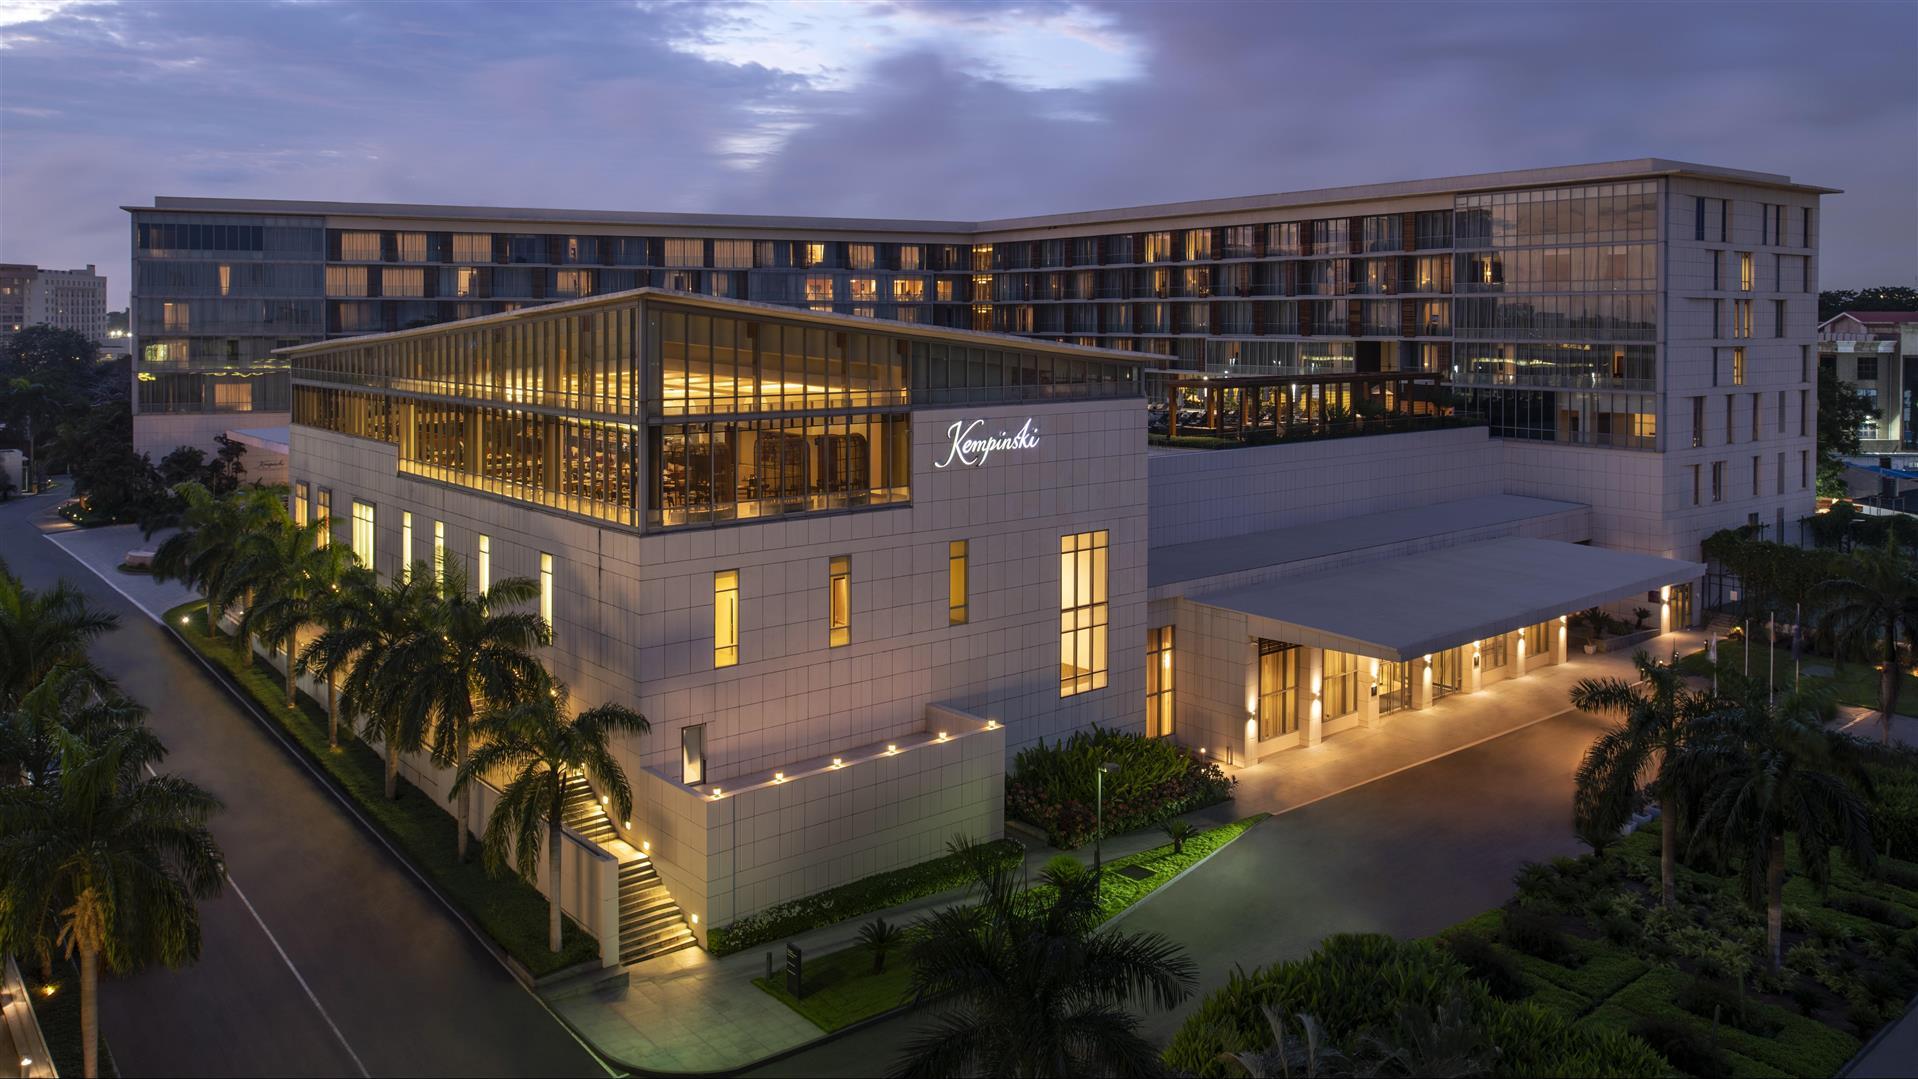 Kempinski Hotel Gold Coast City - Accra in Accra, GH